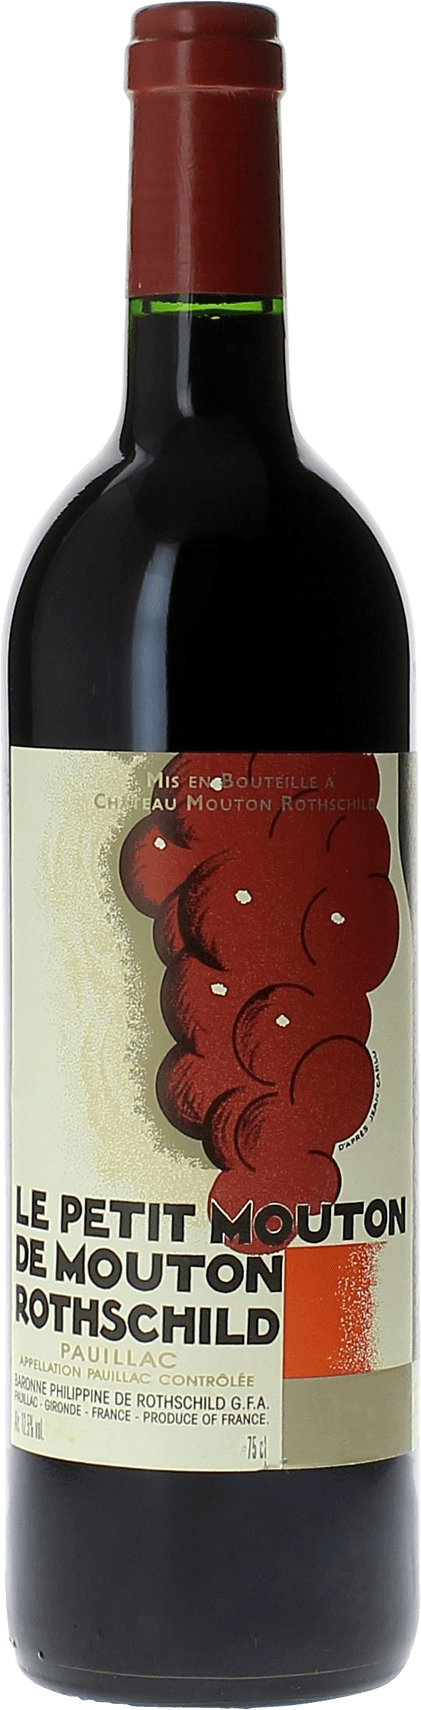 Petit mouton 2017 2nd vin de Mouton Rothschild Pauillac, Bordeaux rouge